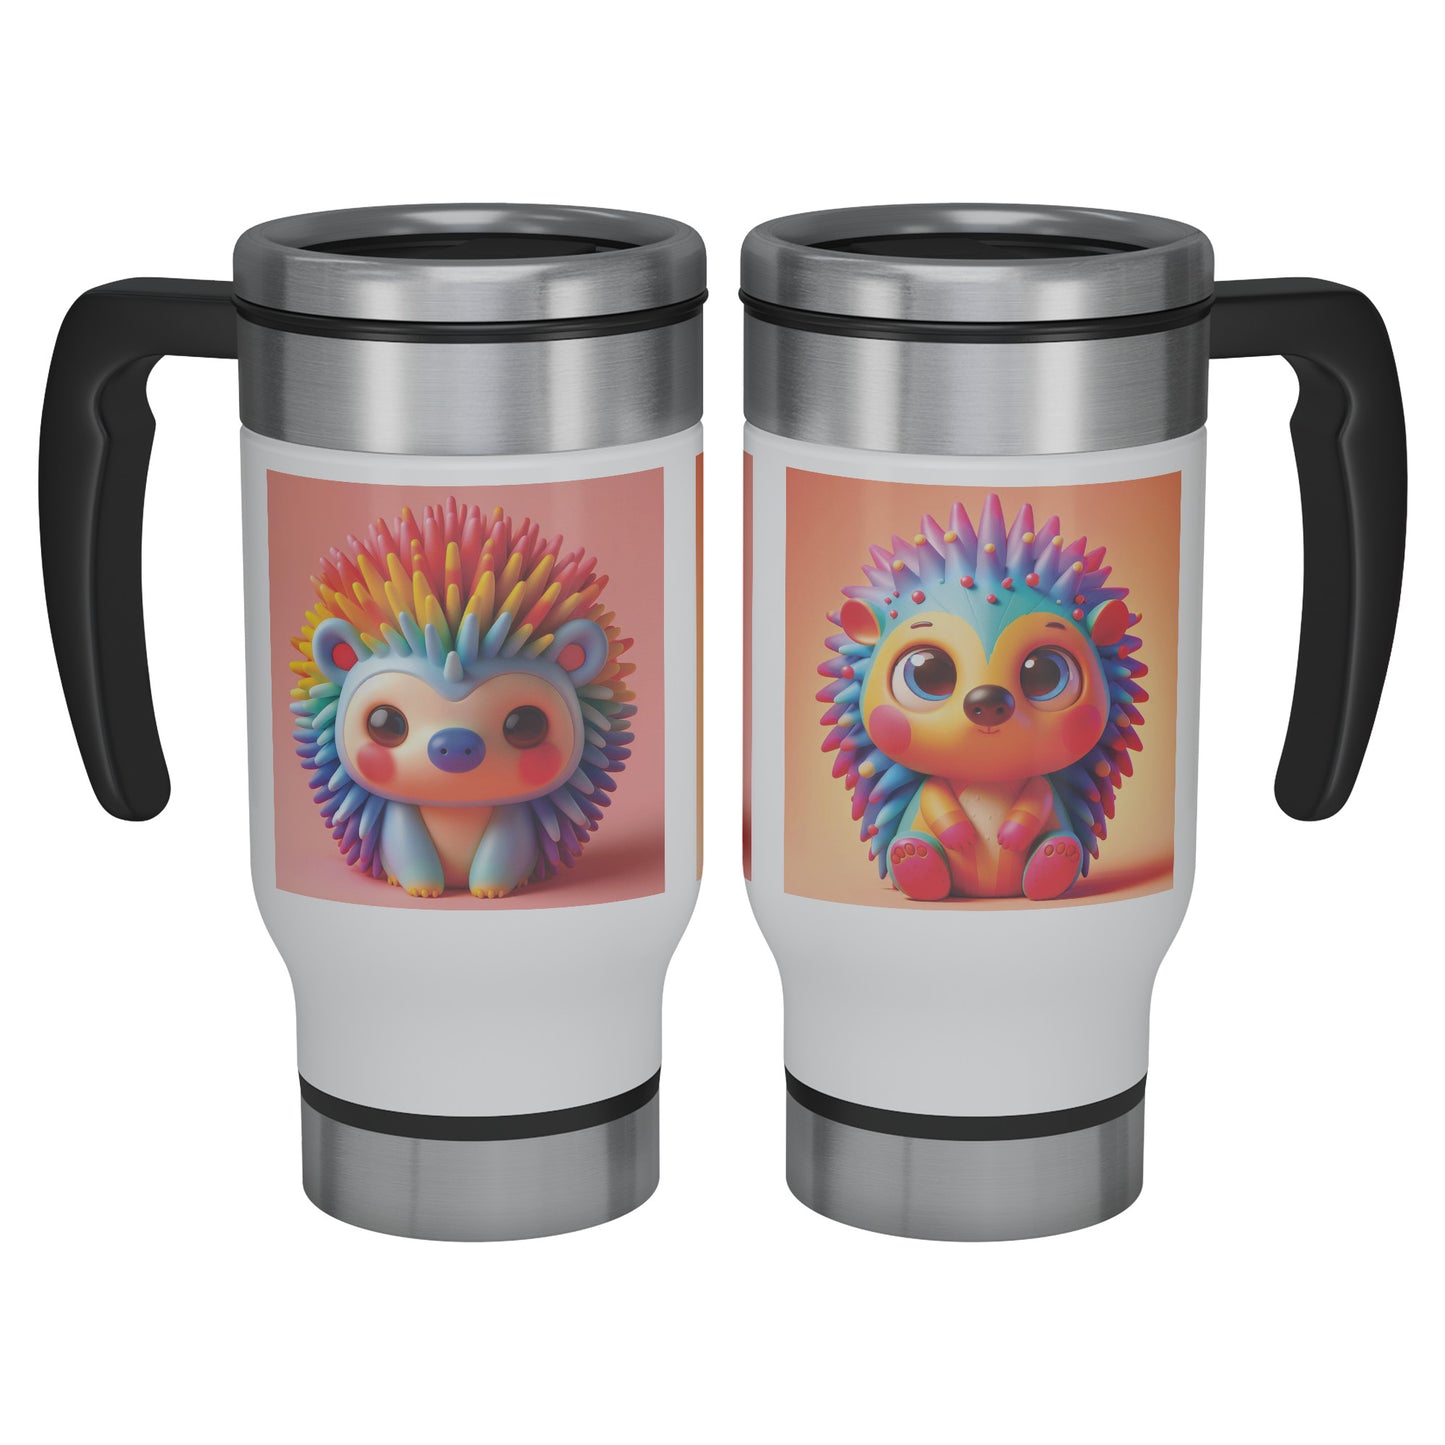 Cute & Adorable Mammals - 14oz Travel Mug - Hedgehog #2